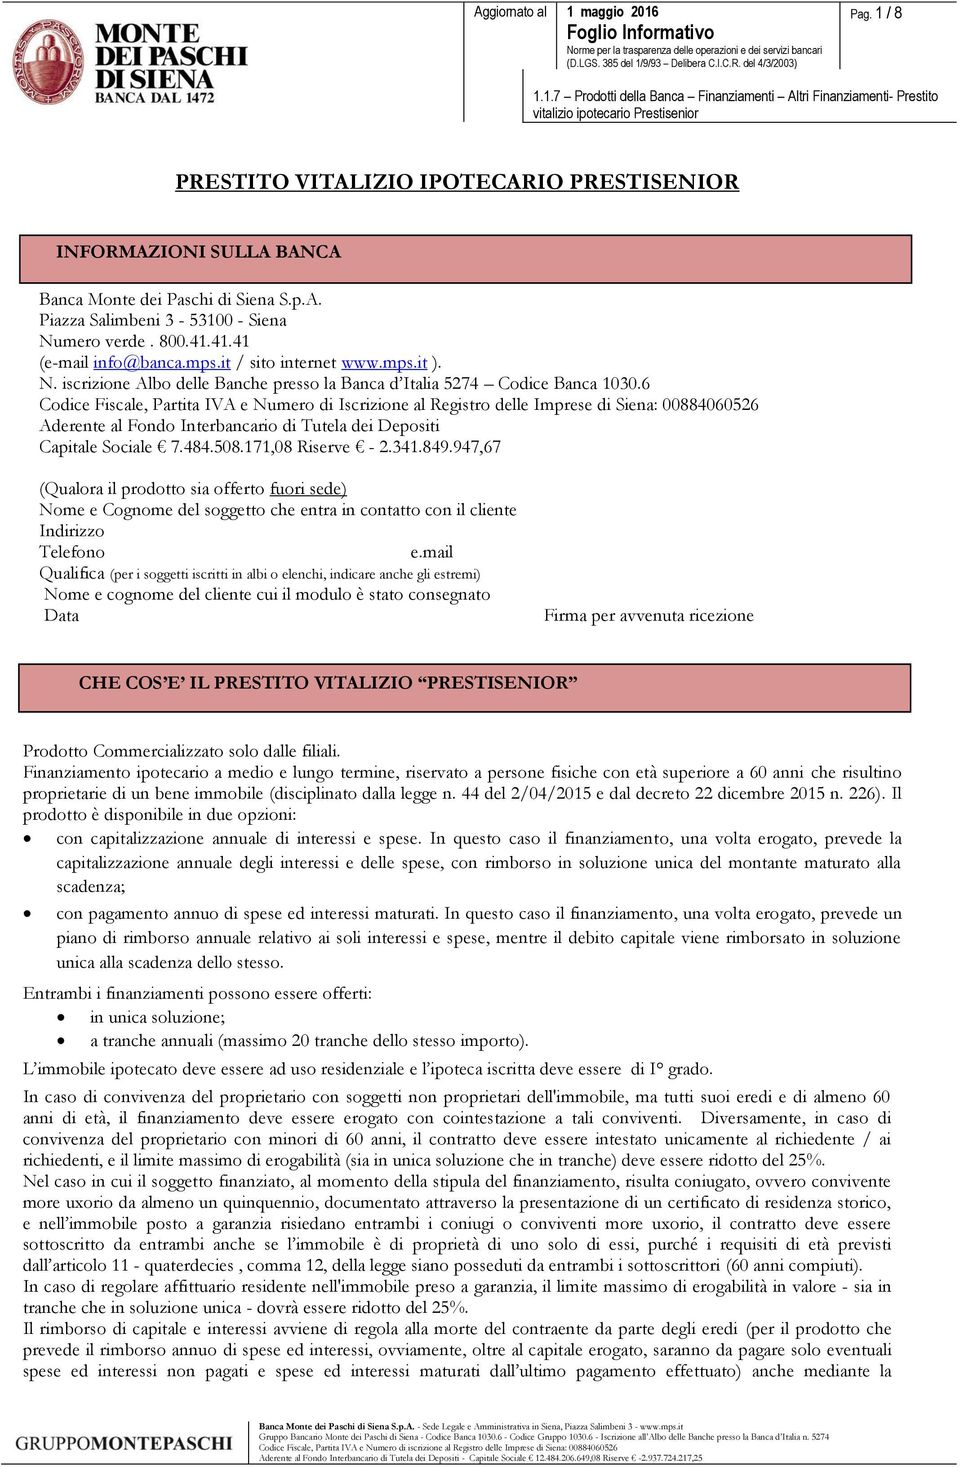 6 Codice Fiscale, Partita IVA e Numero di Iscrizione al Registro delle Imprese di Siena: 00884060526 Capitale Sociale 7.484.508.171,08 Riserve - 2.341.849.